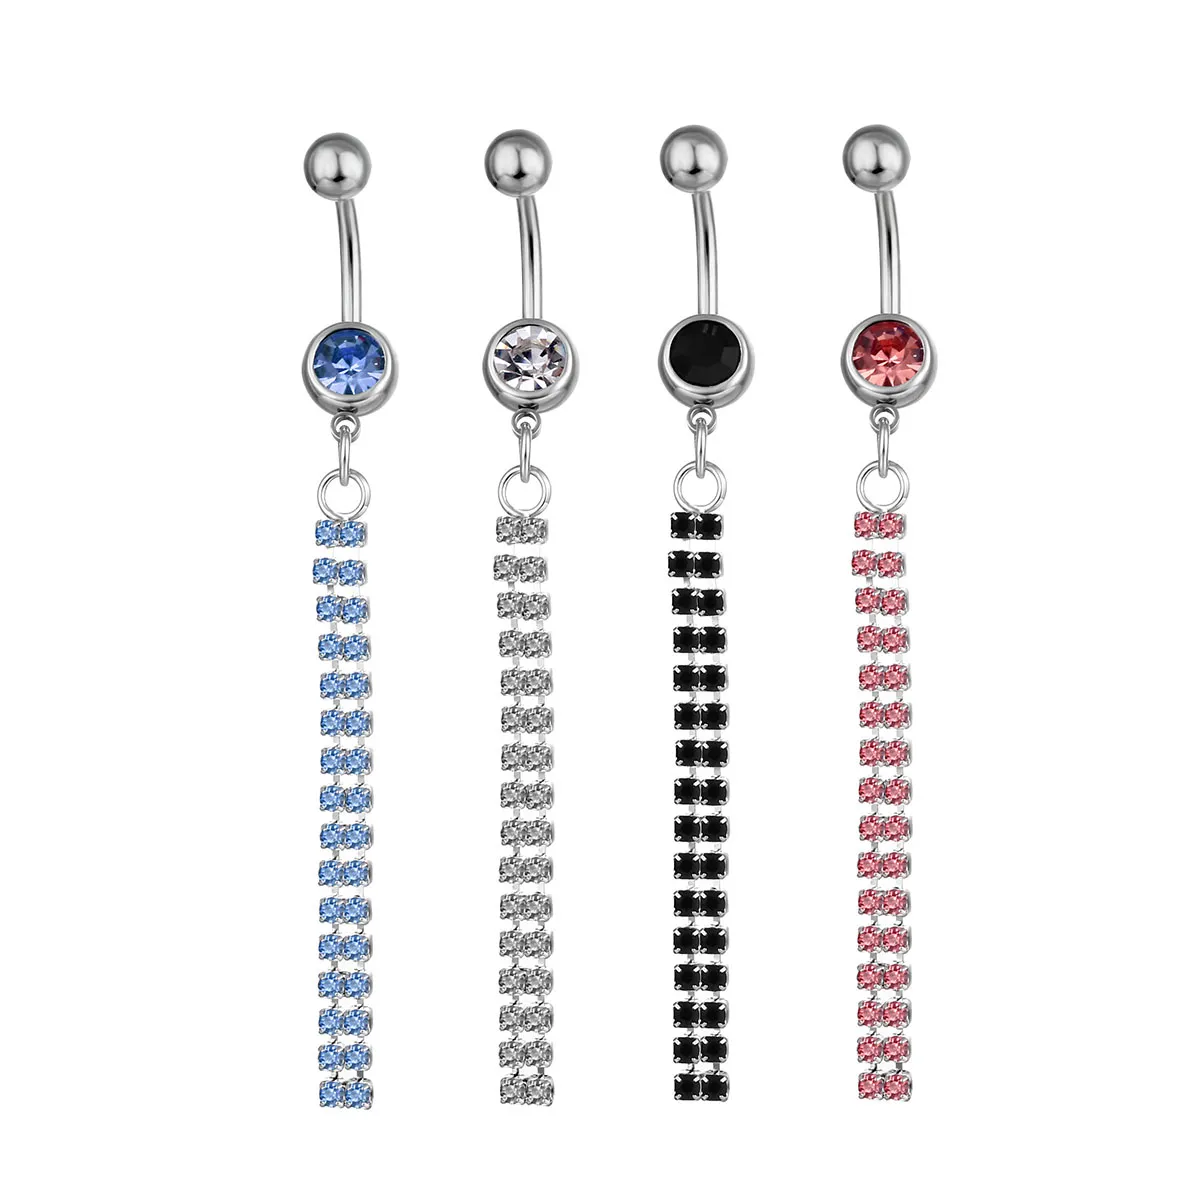 D0021 (4 colores) Botón de cristal Botón de ombligo Anillos de ombligo Perforación del cuerpo Joyería Piercing Accesorios Accesorios Charm de moda (20 PCS / LOT)